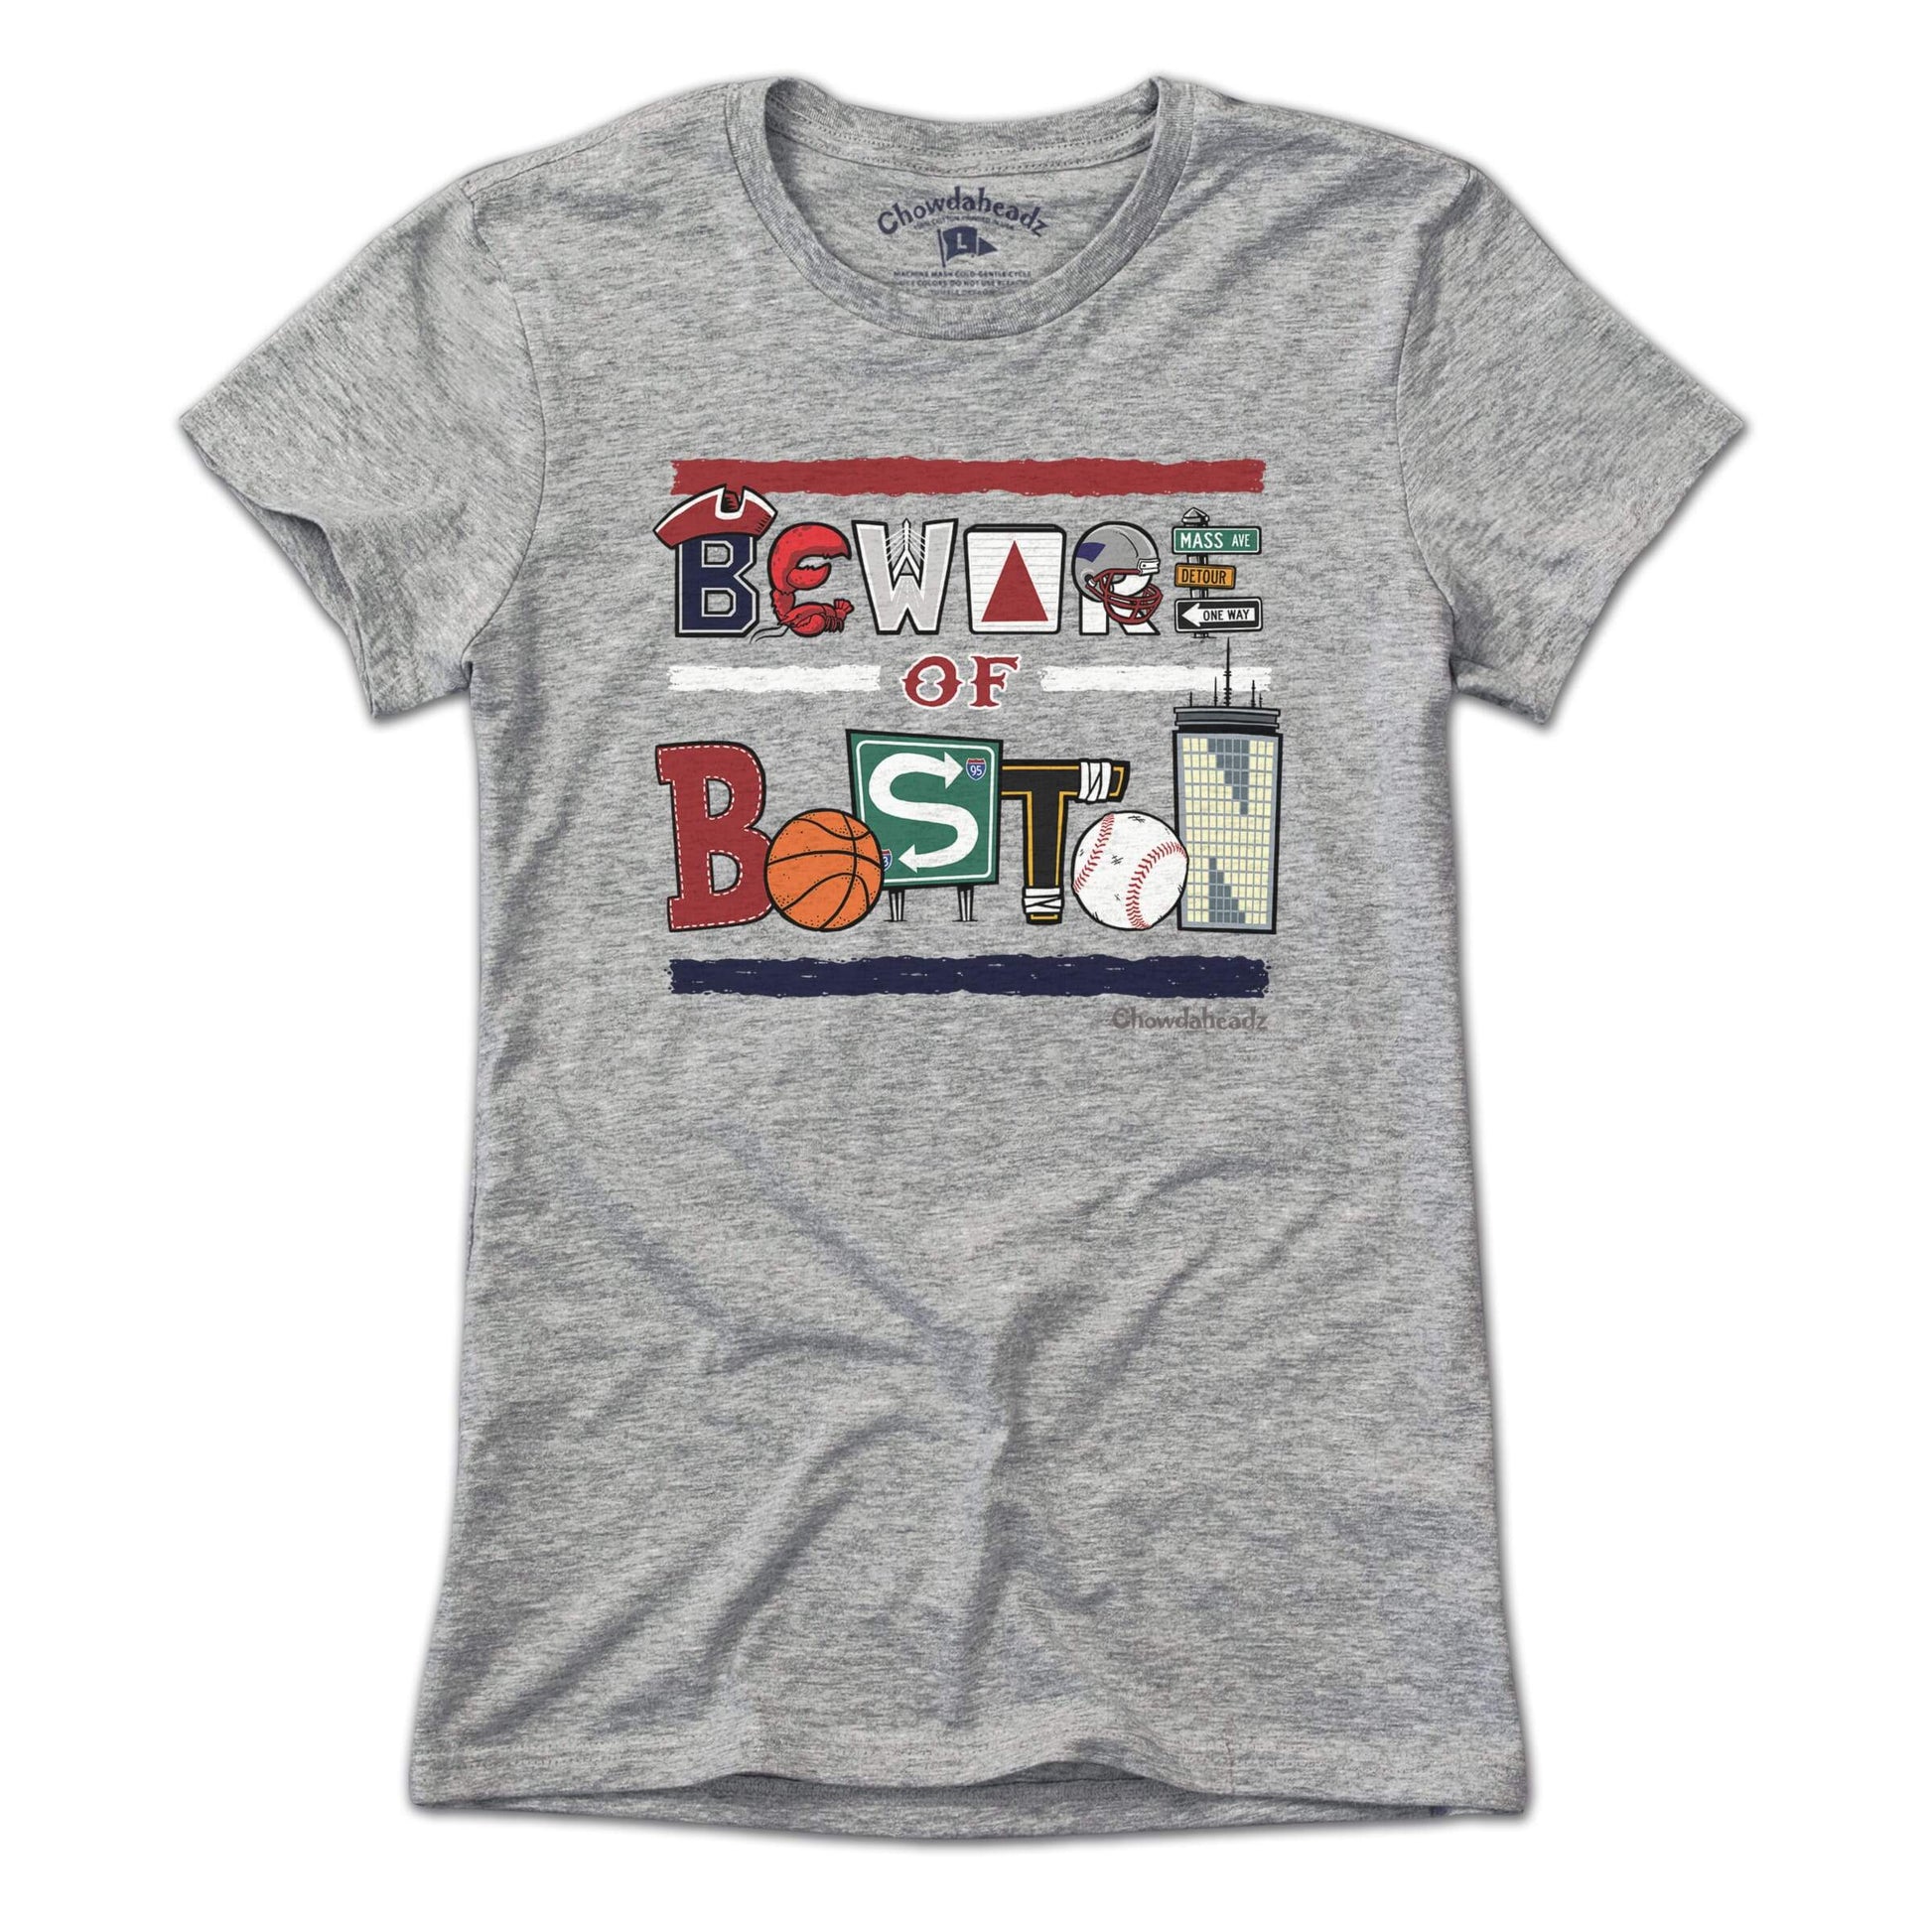 Beware of Boston Icons T-Shirt - Chowdaheadz